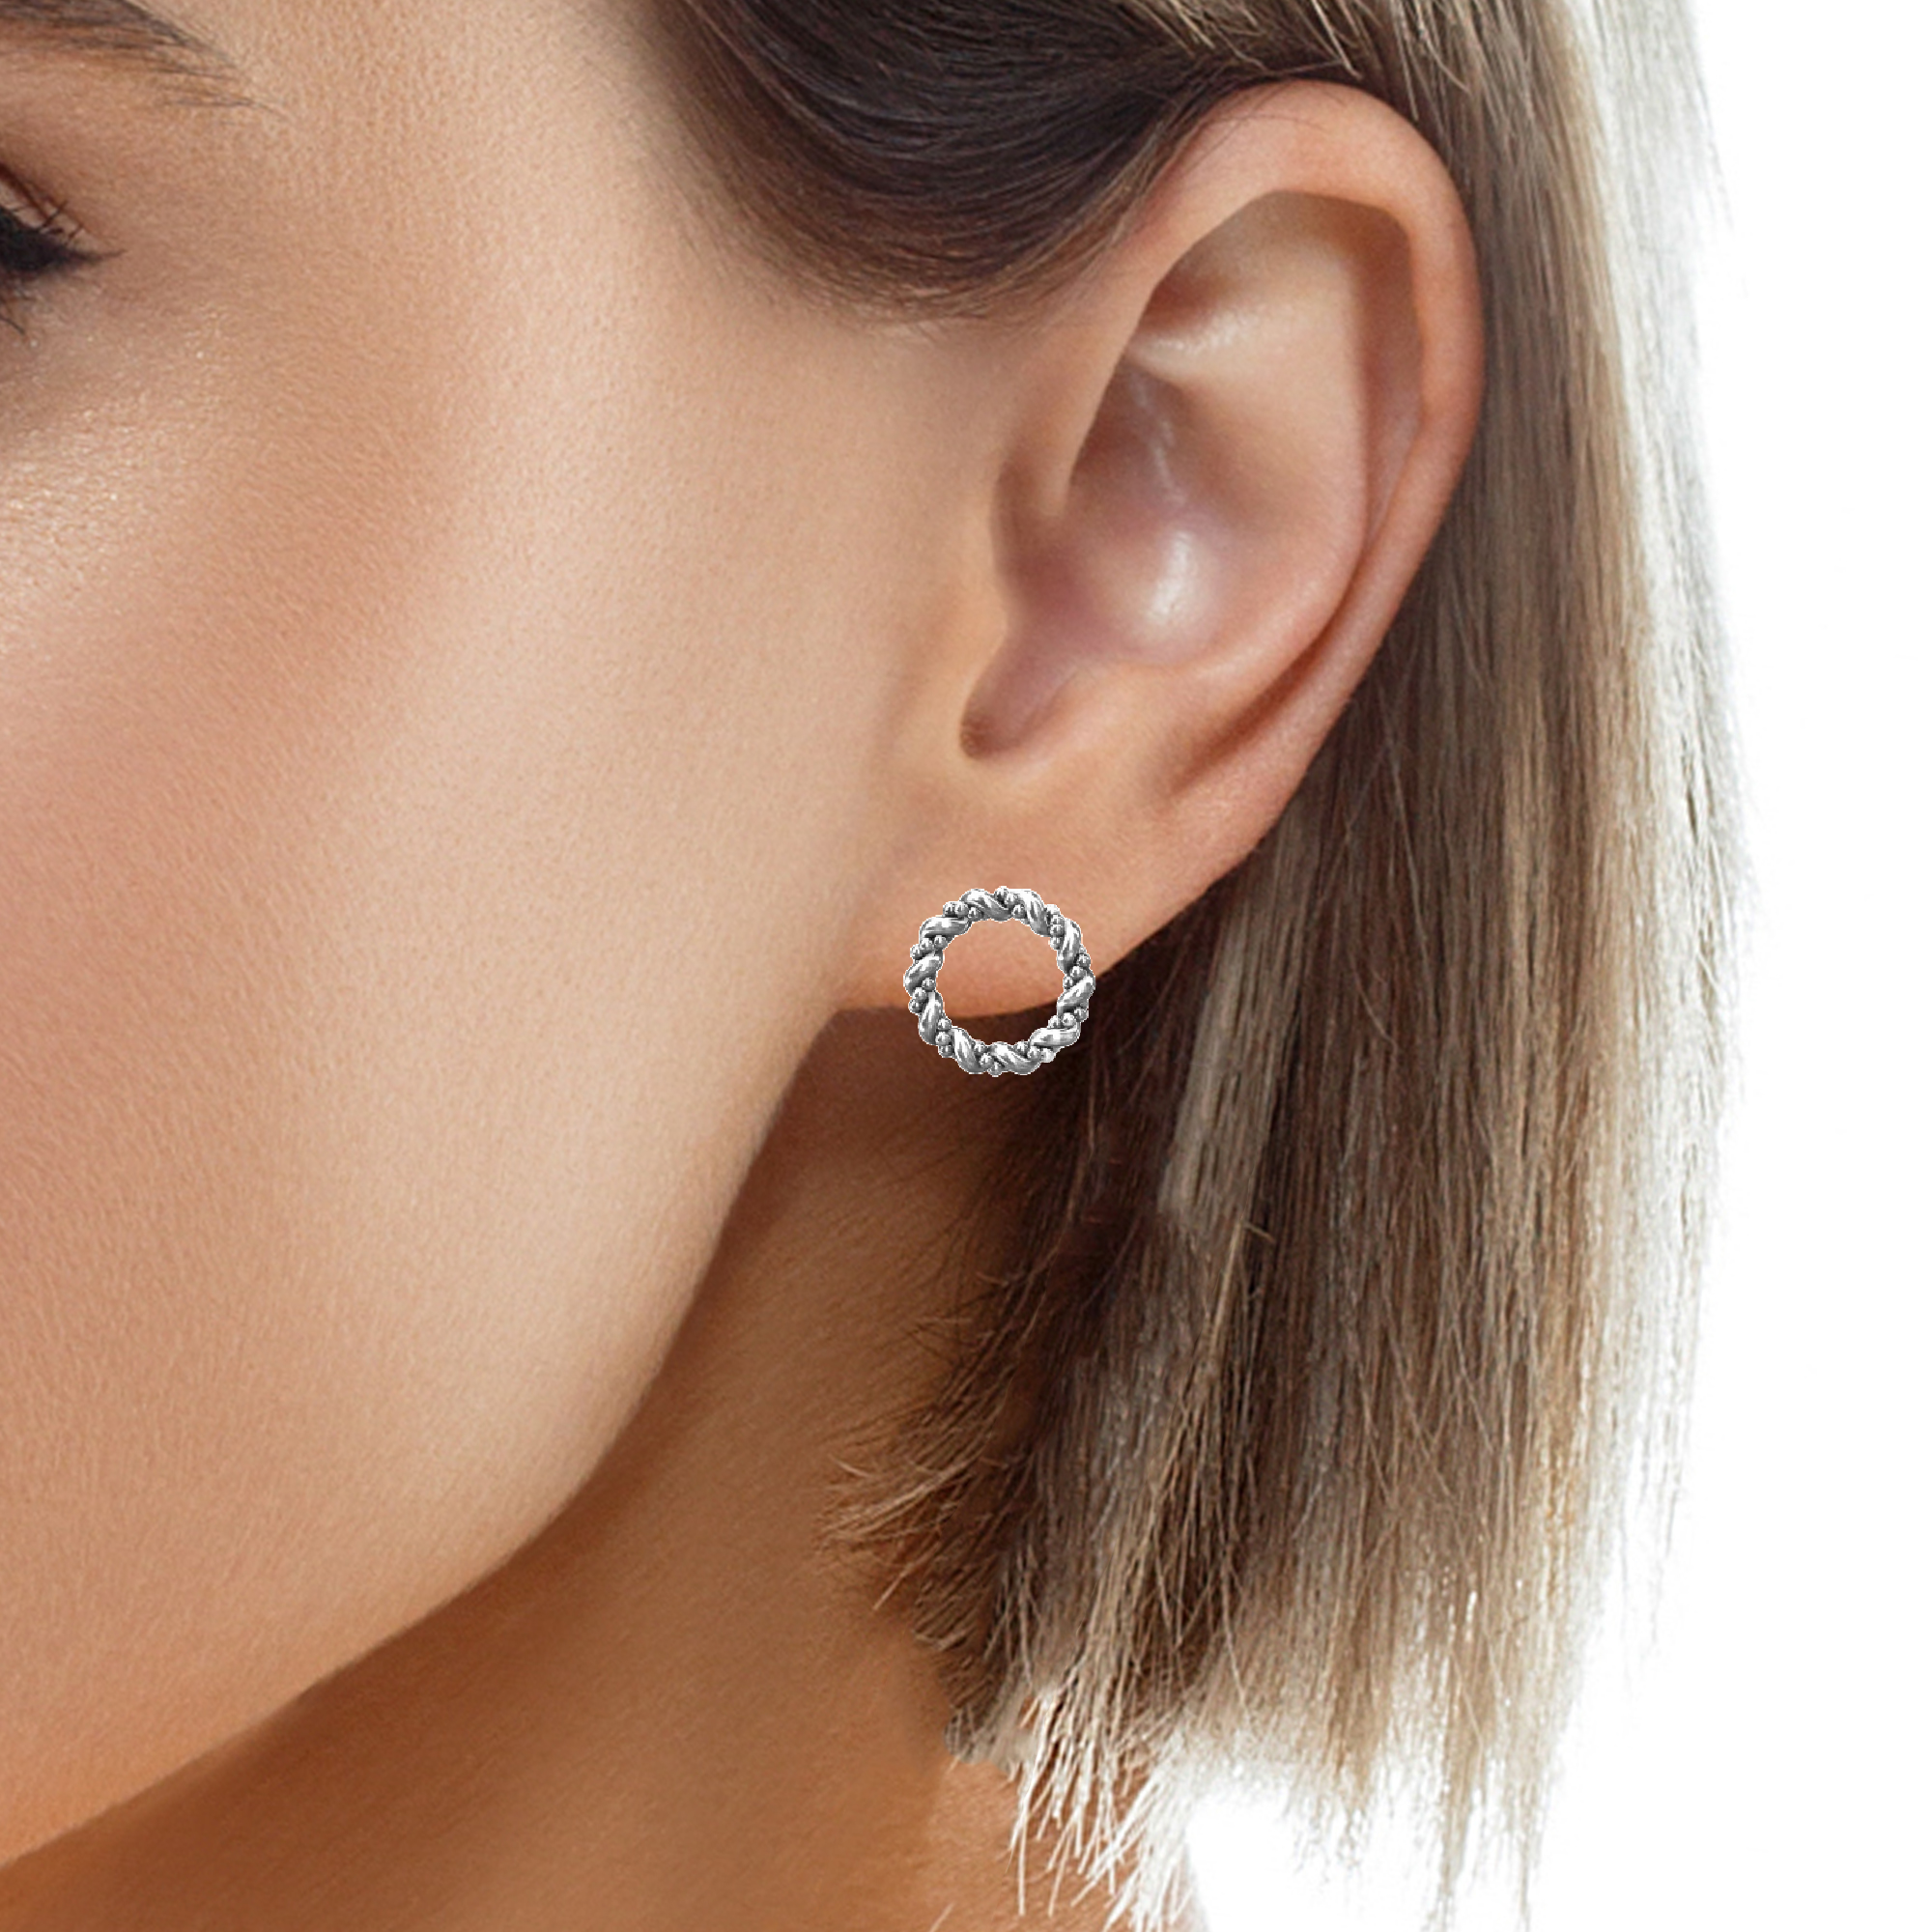 Female model wearing braided hoop stud earrings in sterling silver by Magpie Gems in Ireland.